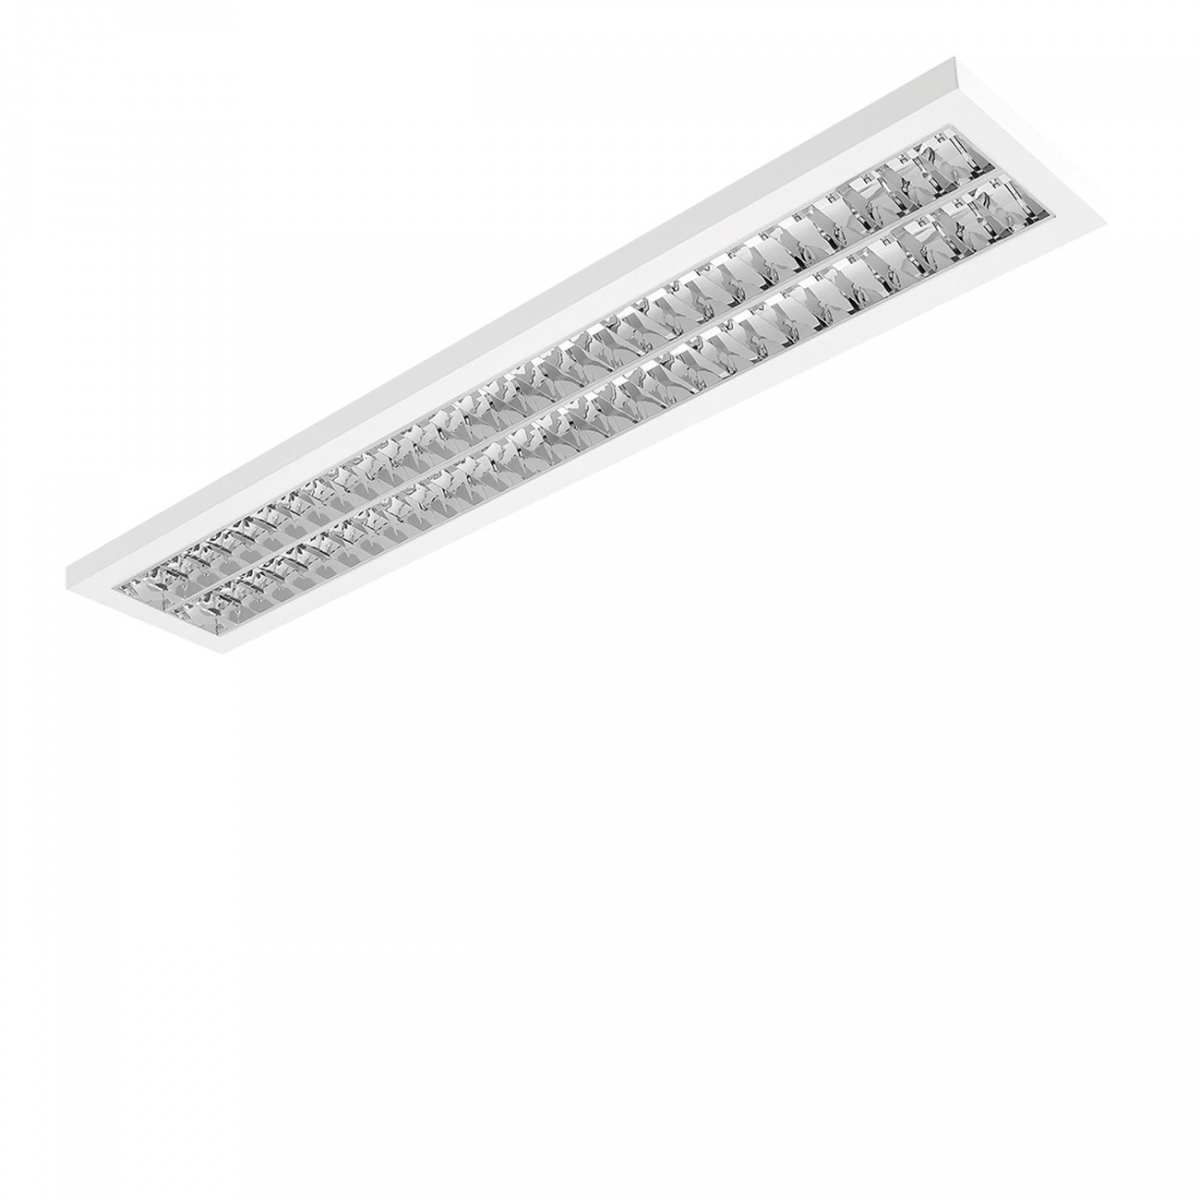 Luminaire LED : Applique LED à grille parabolique avec éclairage direct